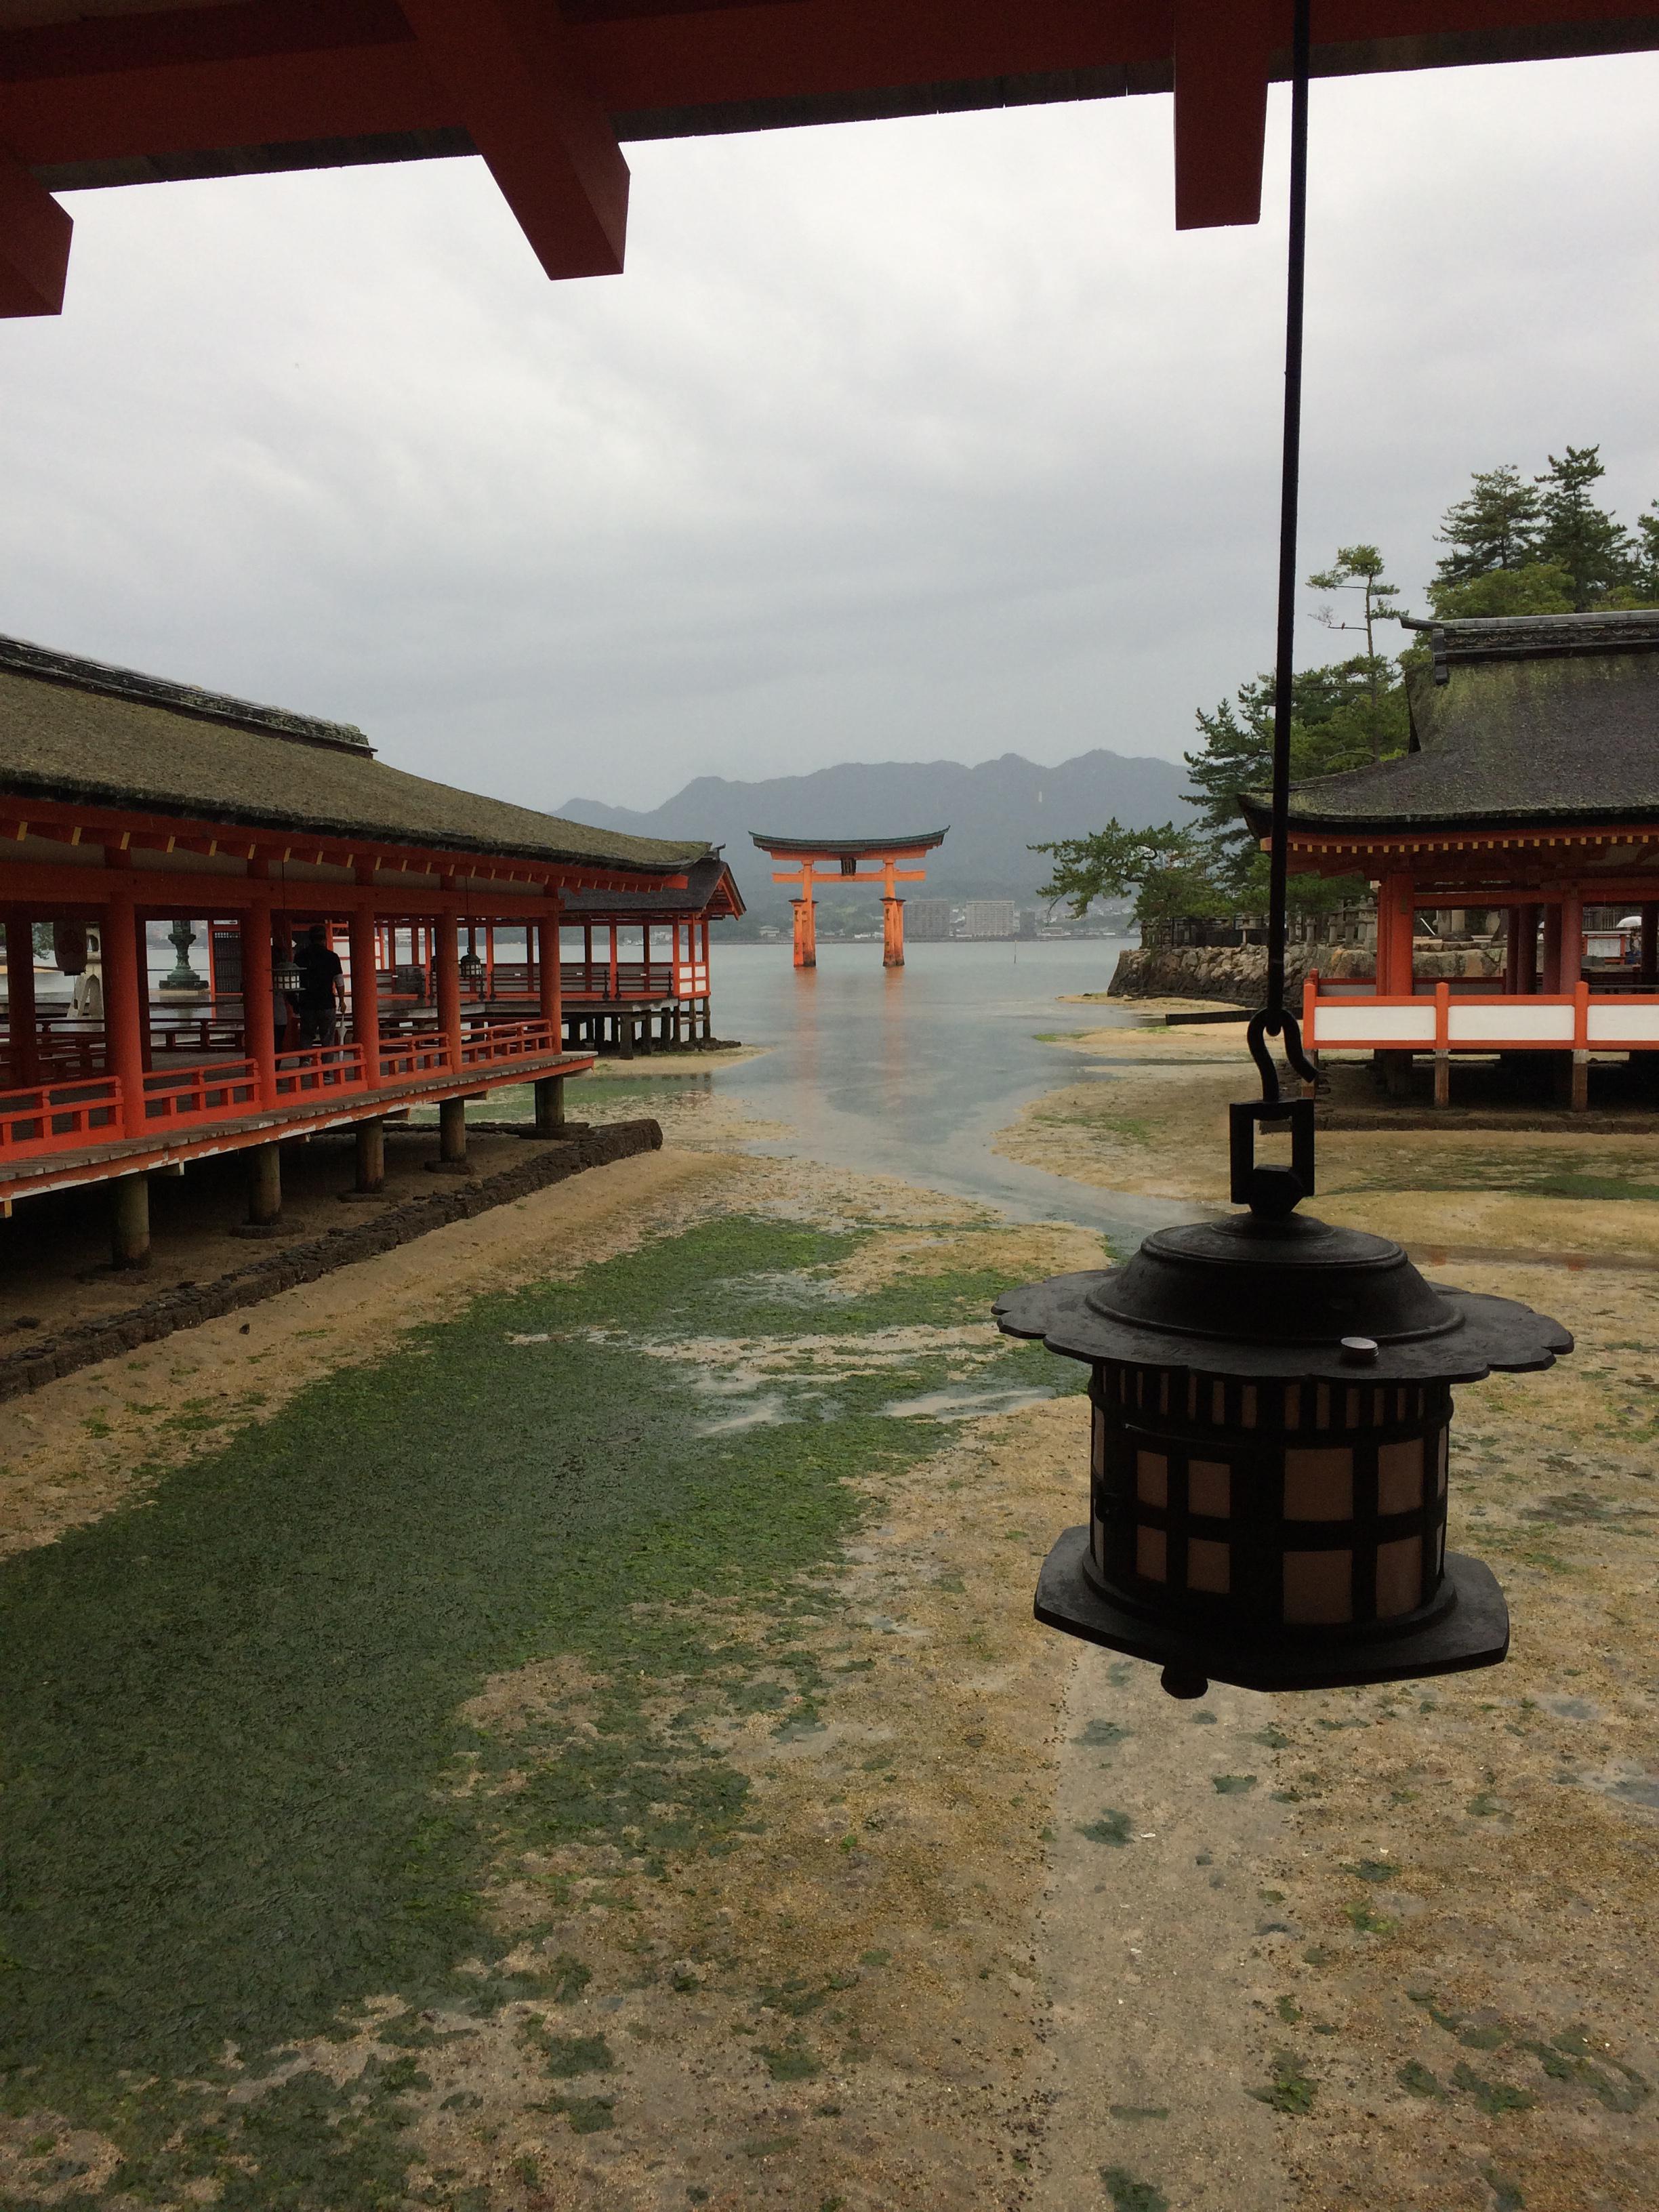 厳島神社 広島県広電宮島口駅 の投稿 1回目 初広島 初宮島でしたが 生憎の雨でした 晴れてた ホトカミ